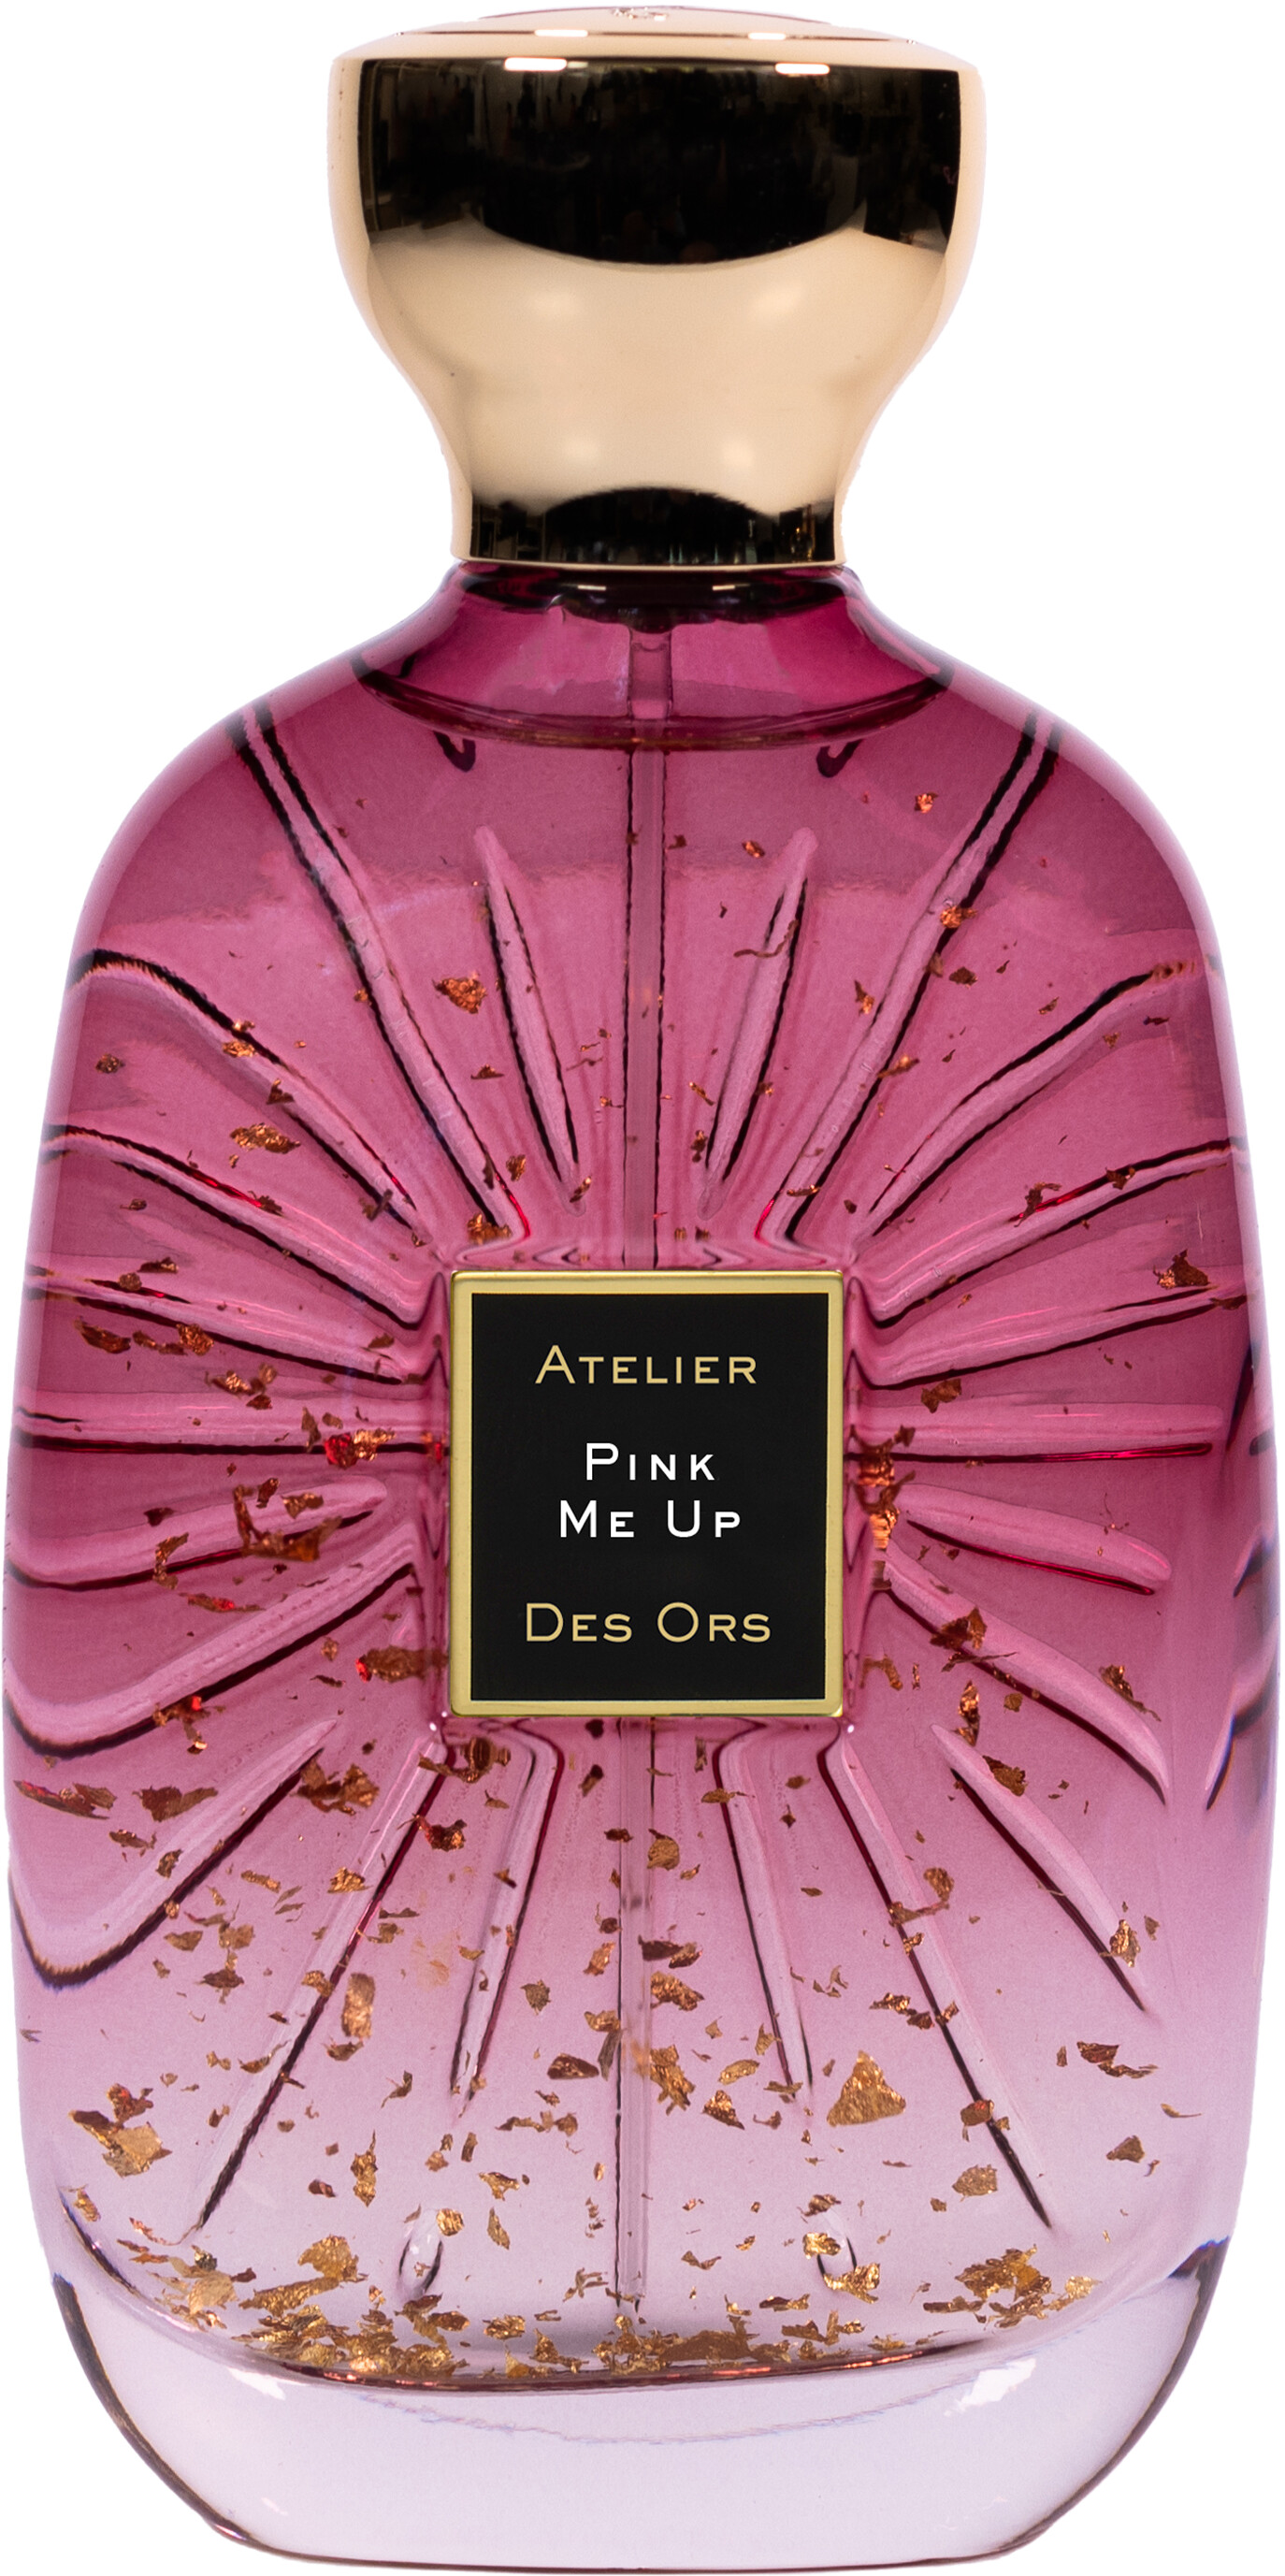 Atelier Des Ors Pink Me Up Eau de Parfum Spray 100ml